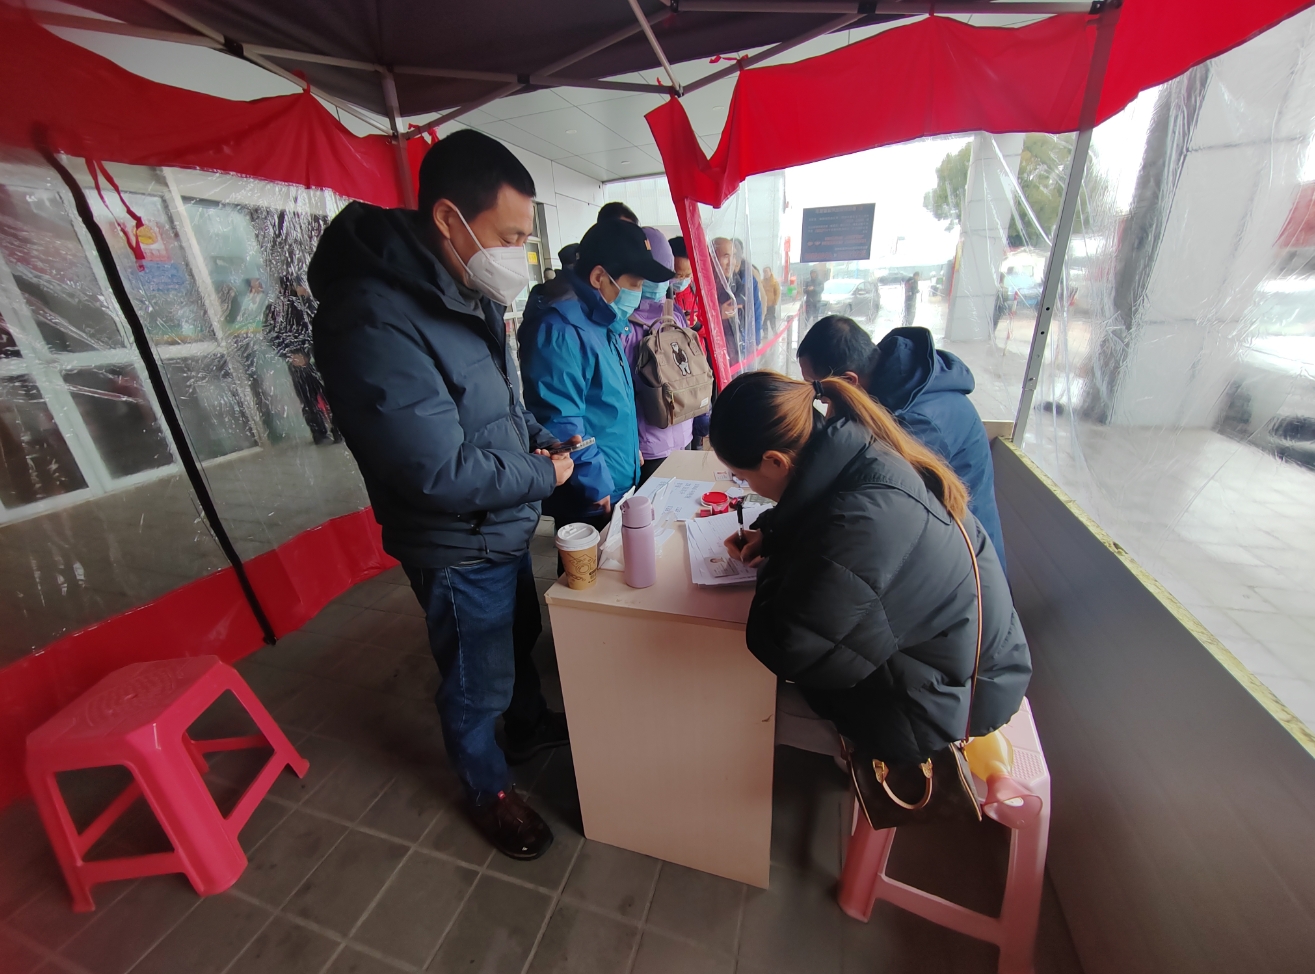 上海烟花爆竹零售点开售 销售点、烟花品种有增加